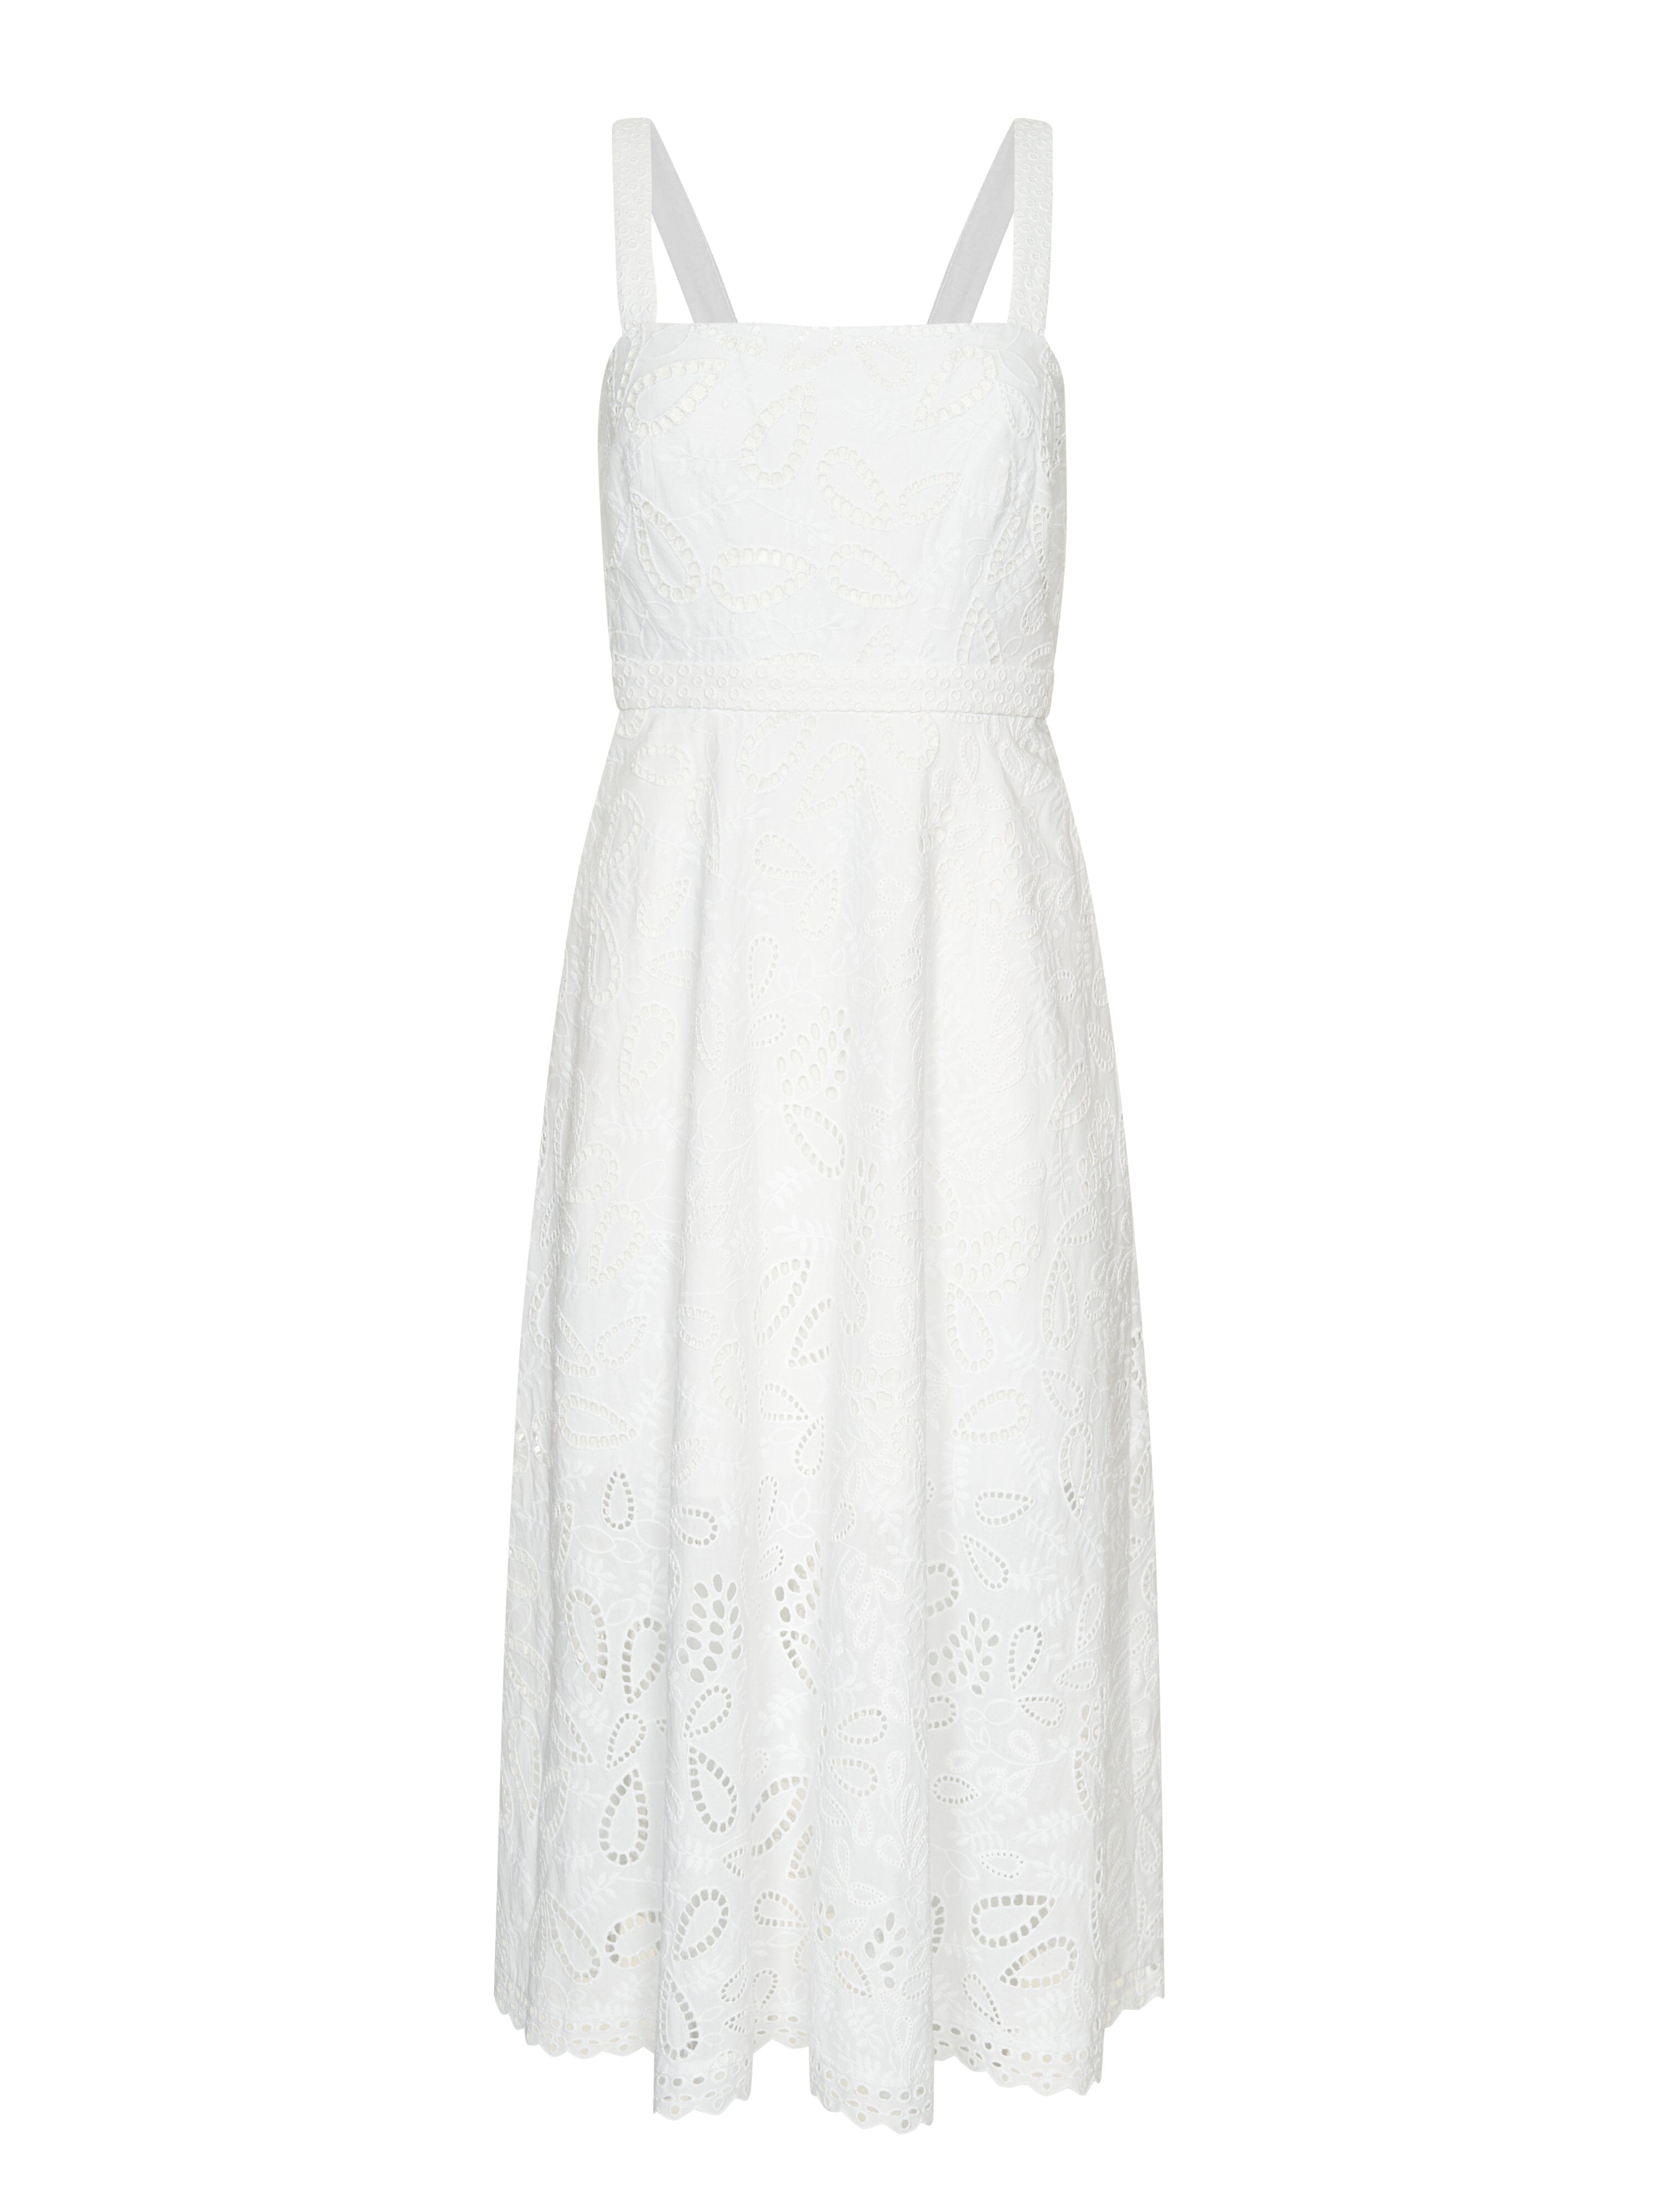 Aubrey C Dress in White